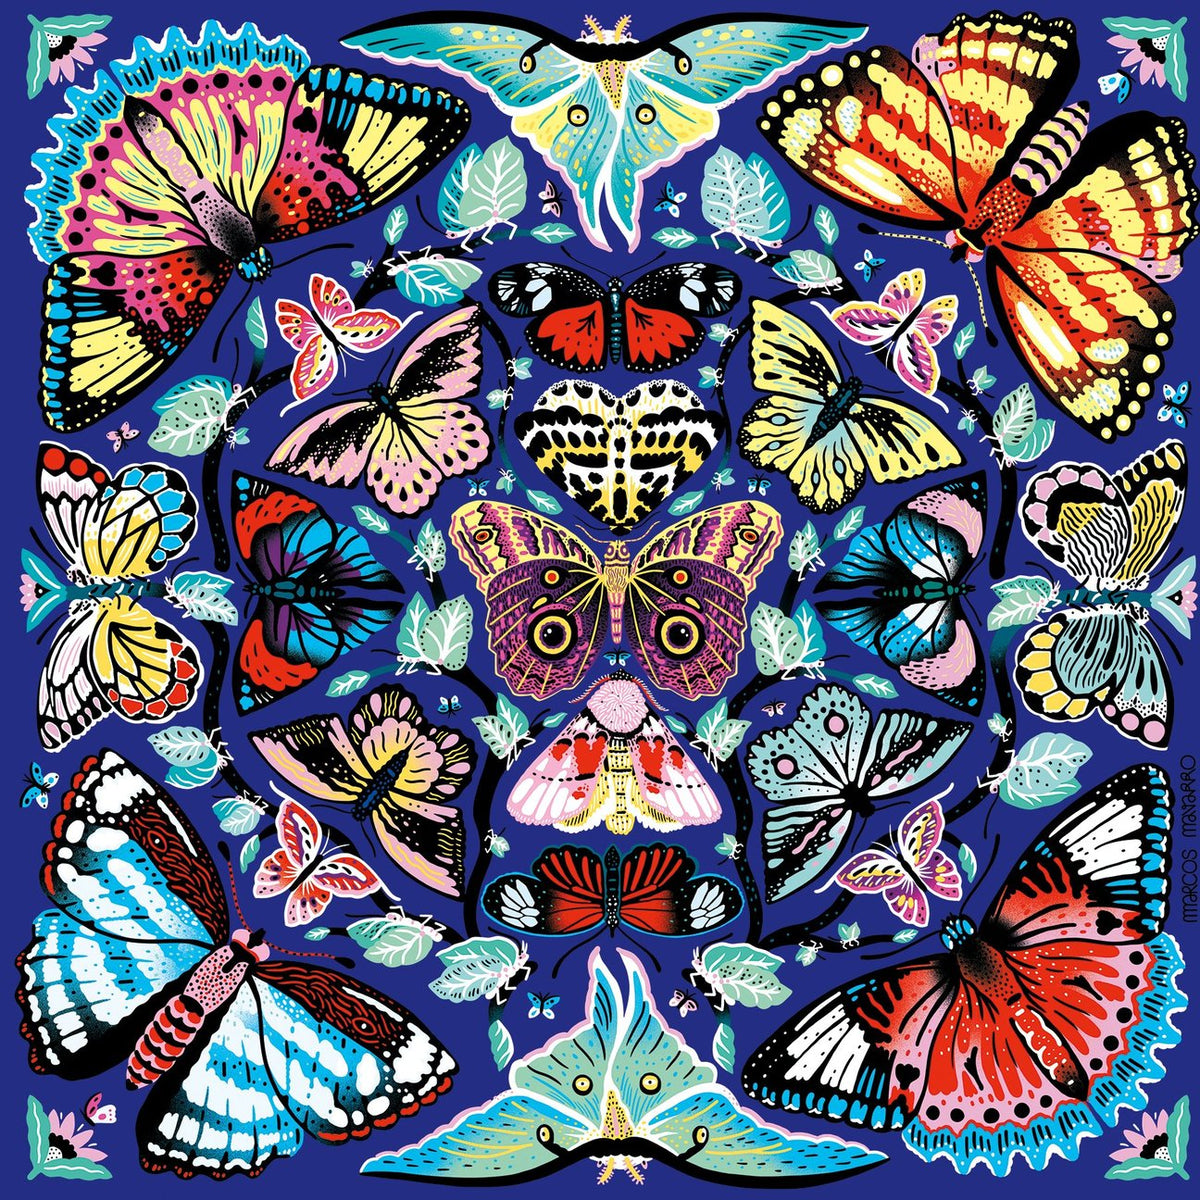 Kaleido Butterflies 500 Piece Puzzle - Quick Ship - Puzzlicious.com